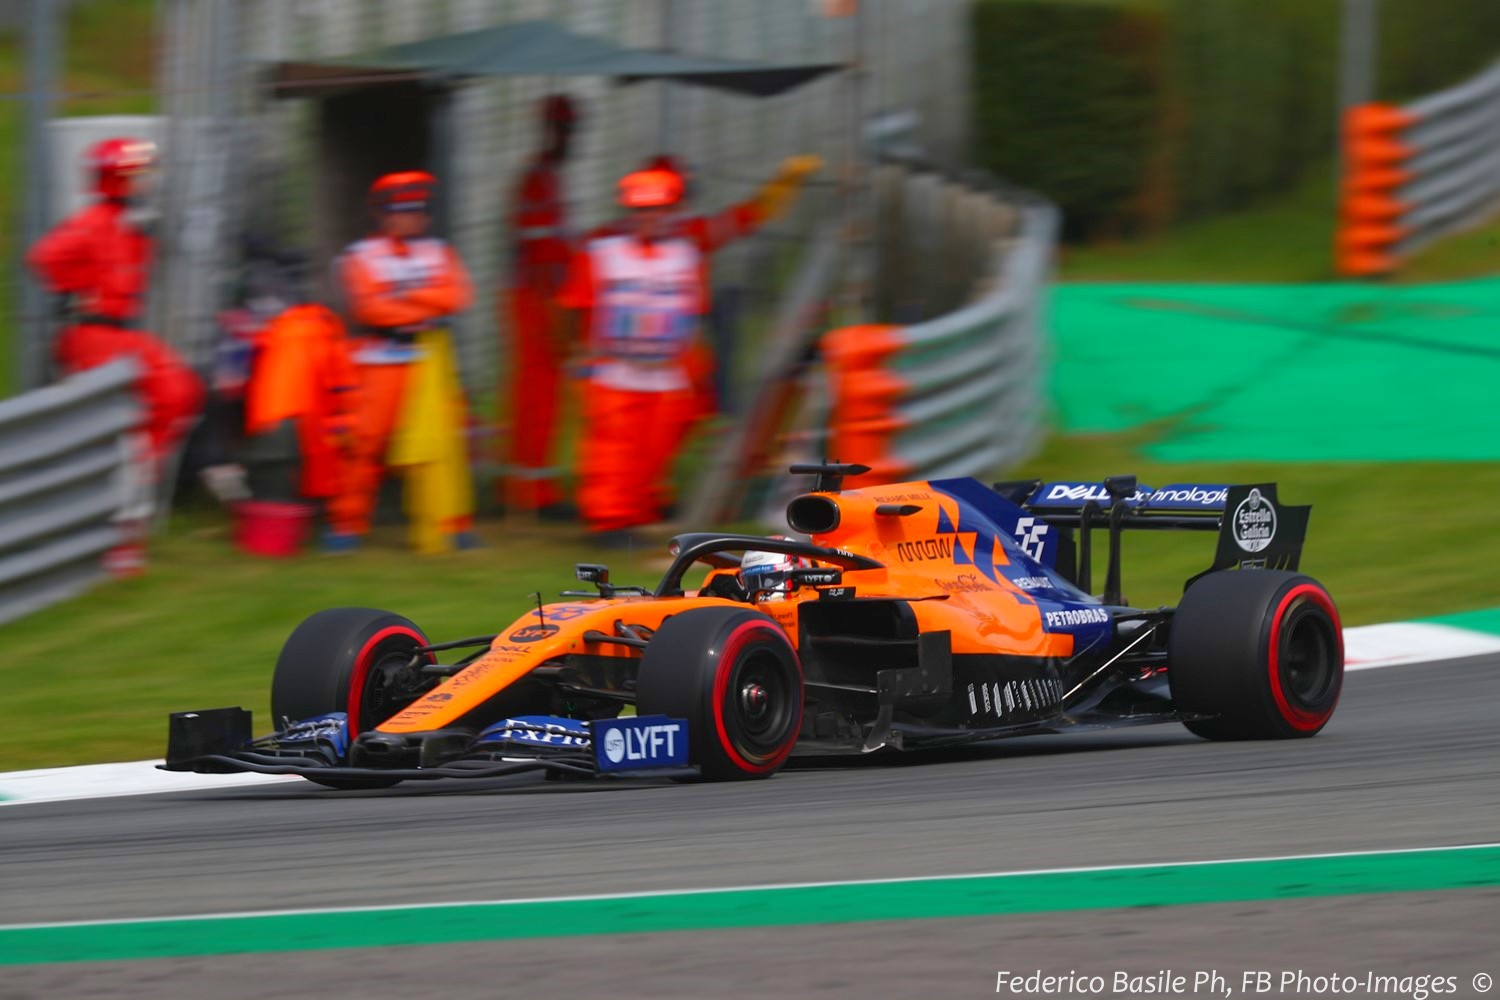 Carlos Sainz Jr. in the slow McLaren